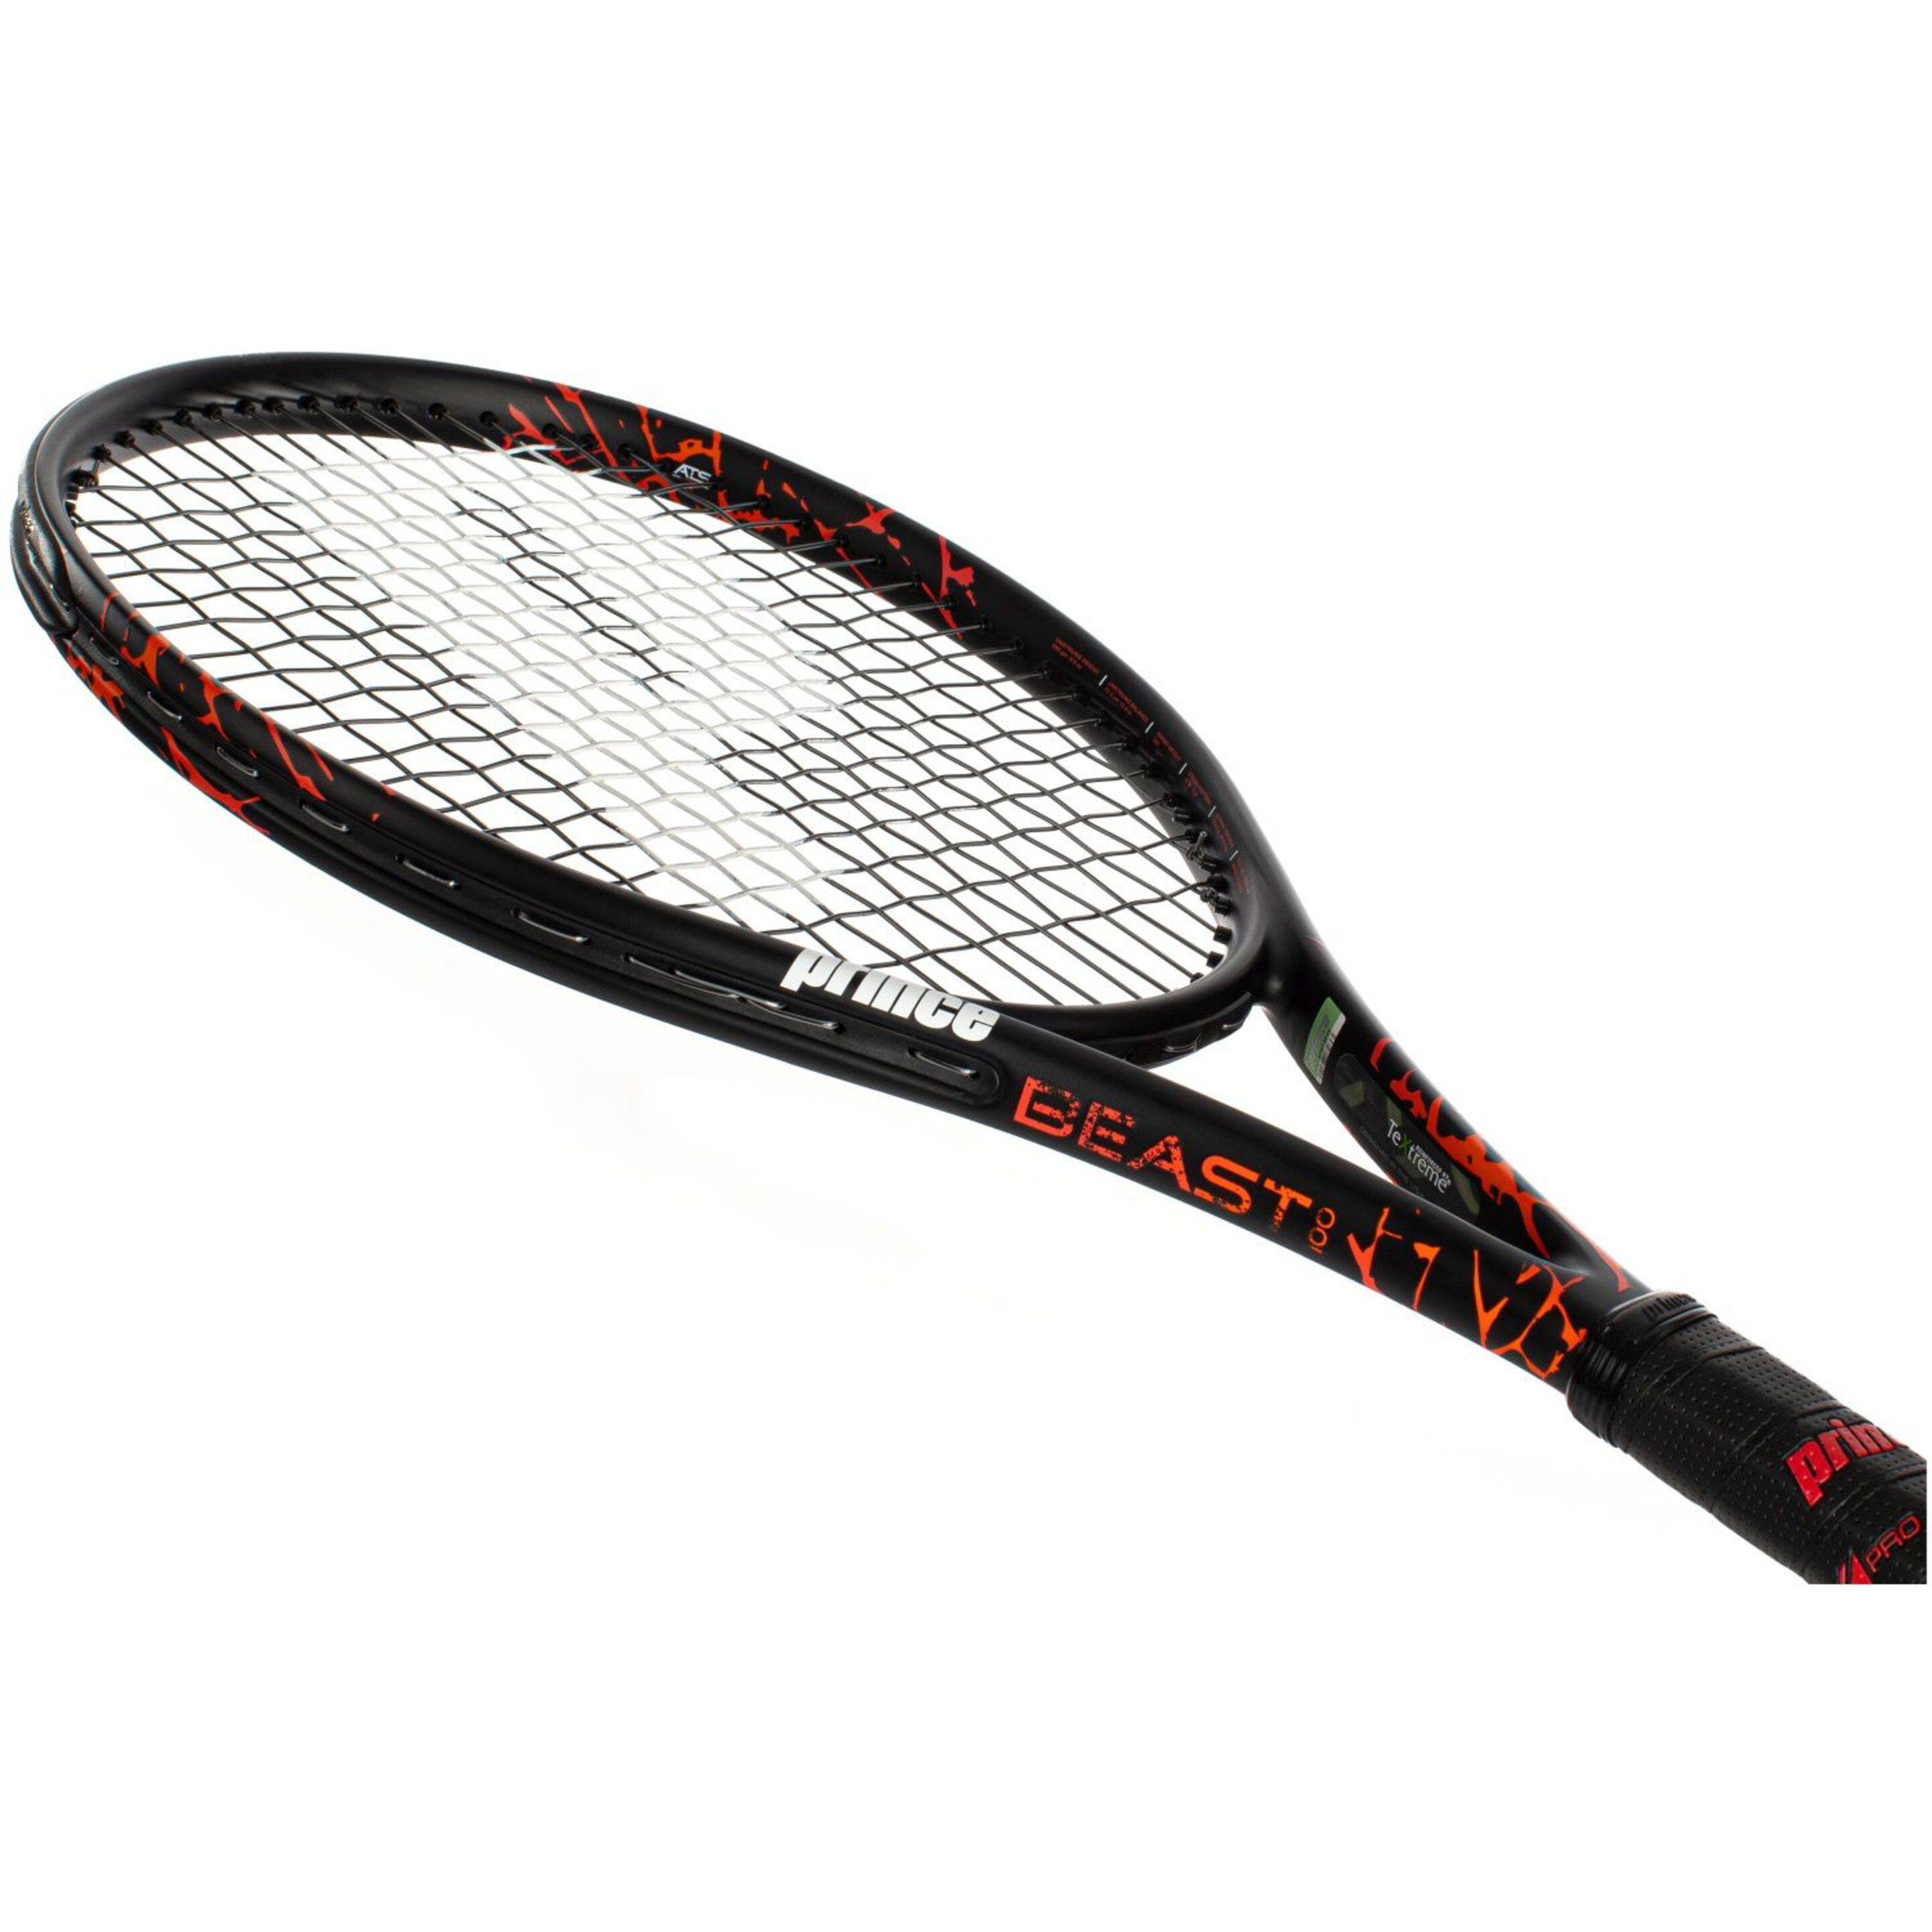 Raqueta De Tenis Prince Beast 280 G (sin Encordar Y Sin Funda) - Negro/Naranja  MKP